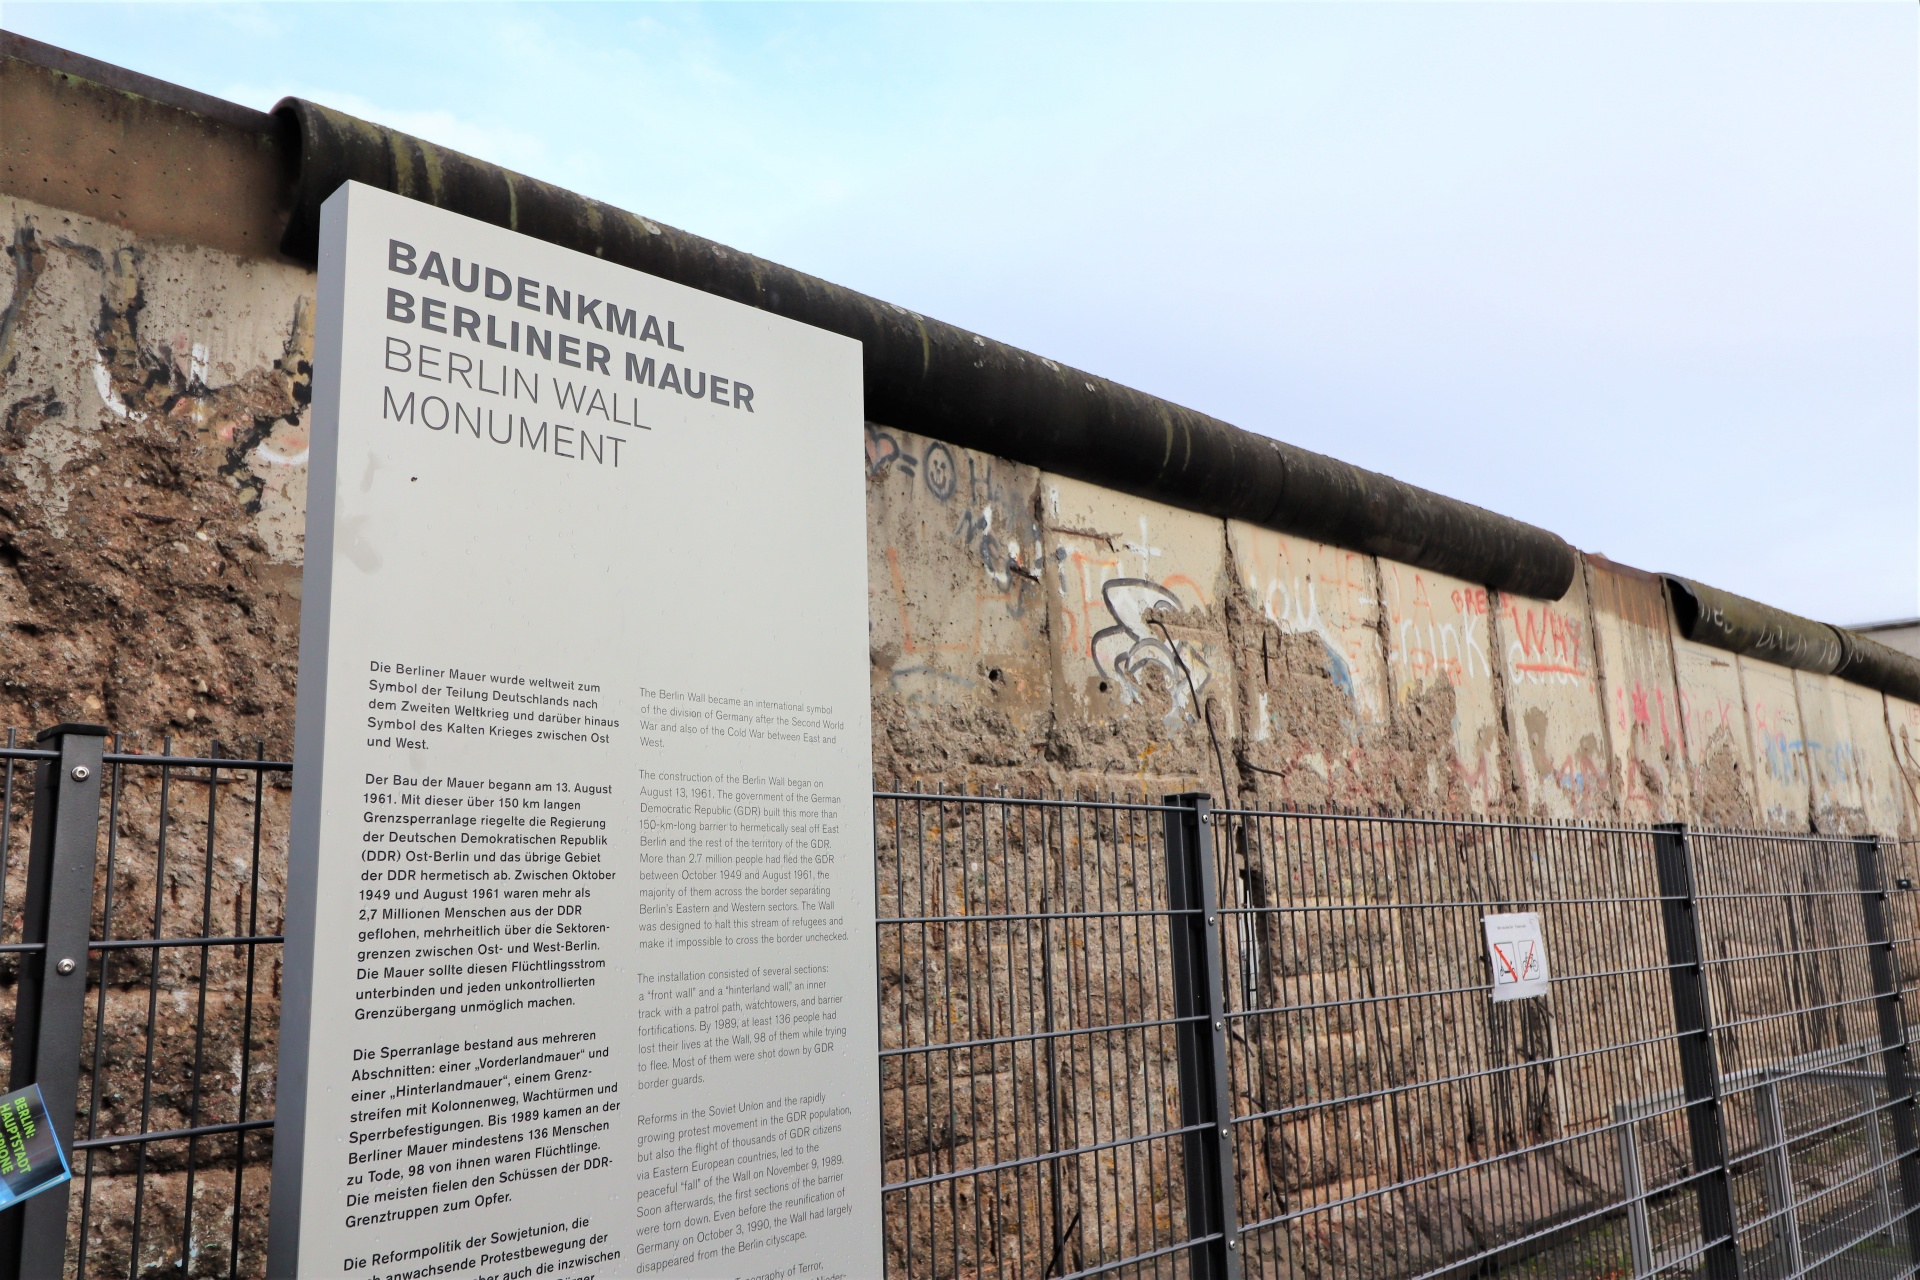 Baudenkmal Berlin Wall